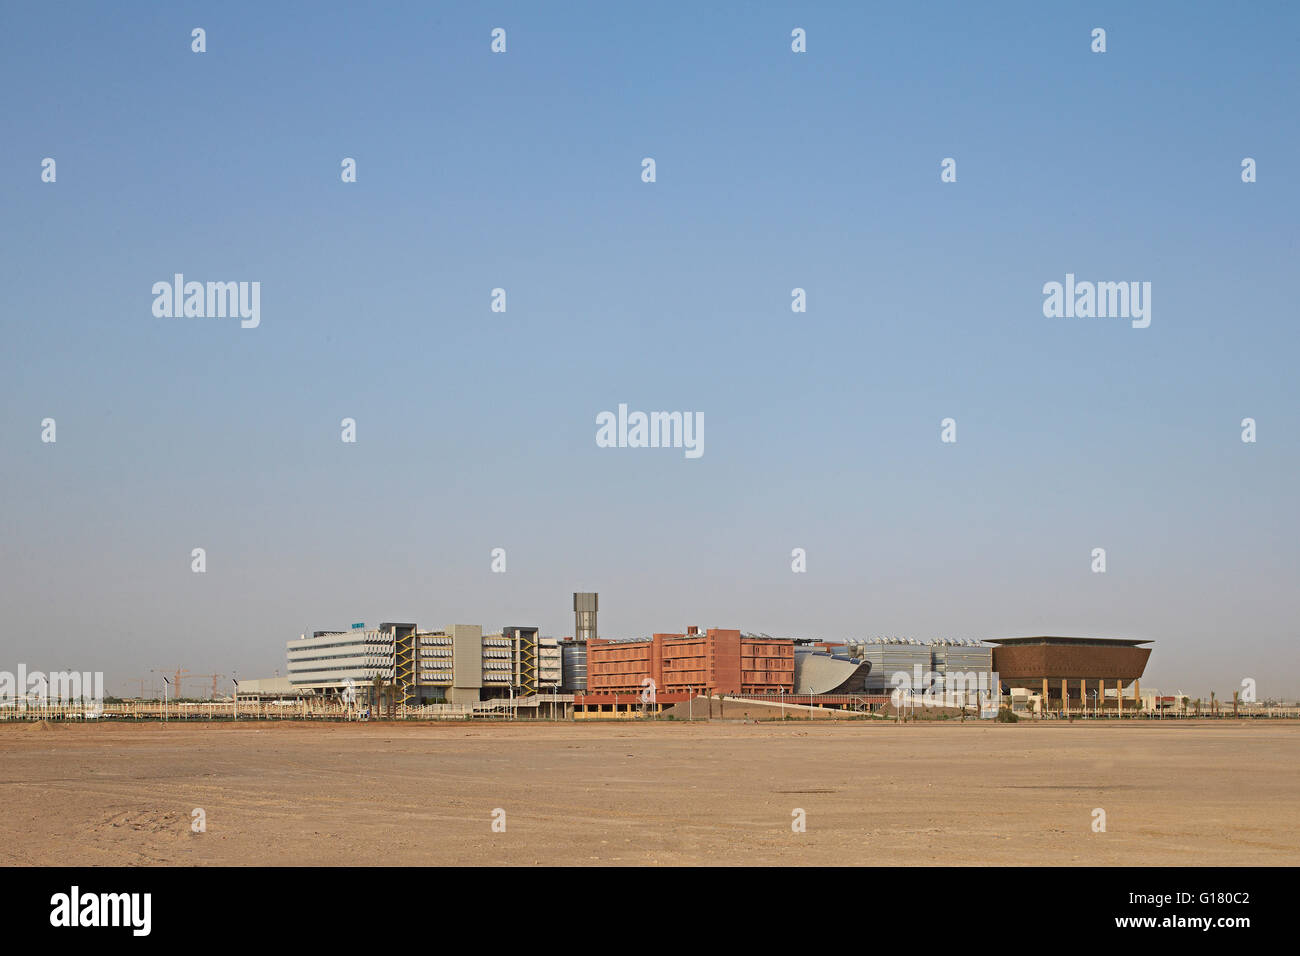 Fernblick von der Wüste zur Stadtentwicklung. Masdar City, Masdar City, Vereinigte Arabische Emirate. Architekt: verschiedene, 2014. Stockfoto